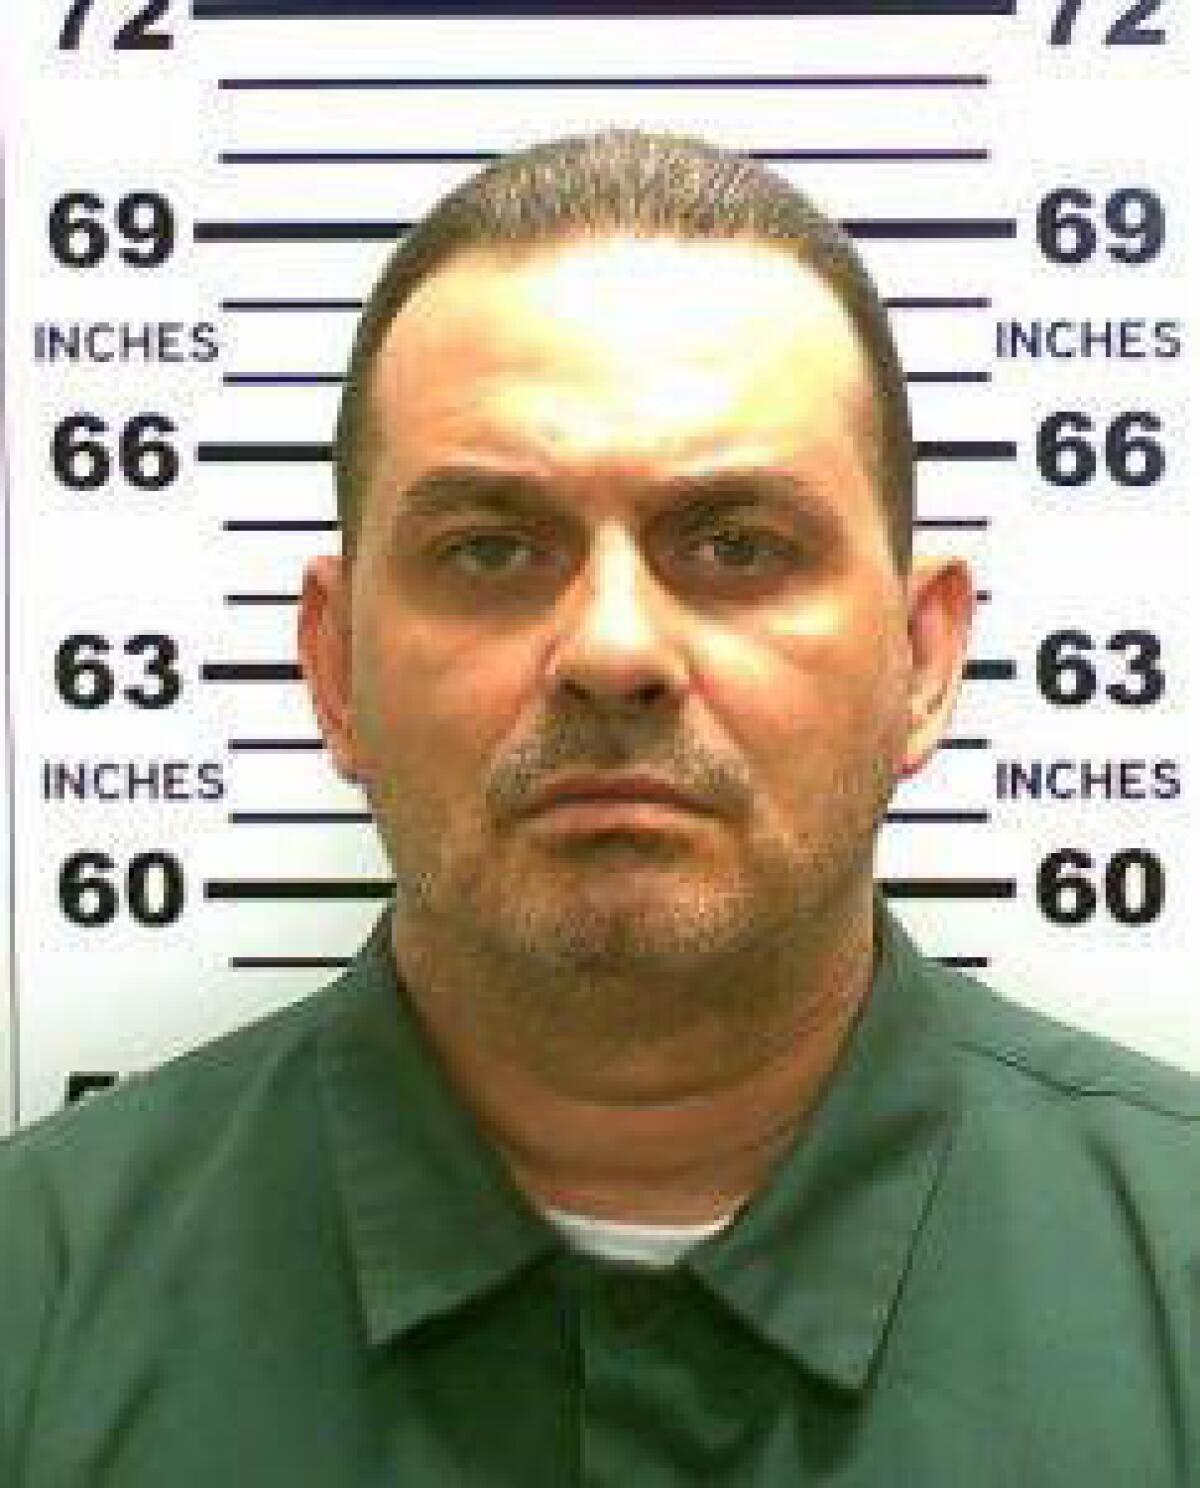 Esta foto muestra a Richard Matt, quien junto con David Sweat escapó de una penitenciaría en Nueva York el 6 de junio. Ambos continúan prófugos. Más de 220 condenados en todo el país aparecen como prófugos, según un estudio de la Associated Press. (New York State Police via AP)